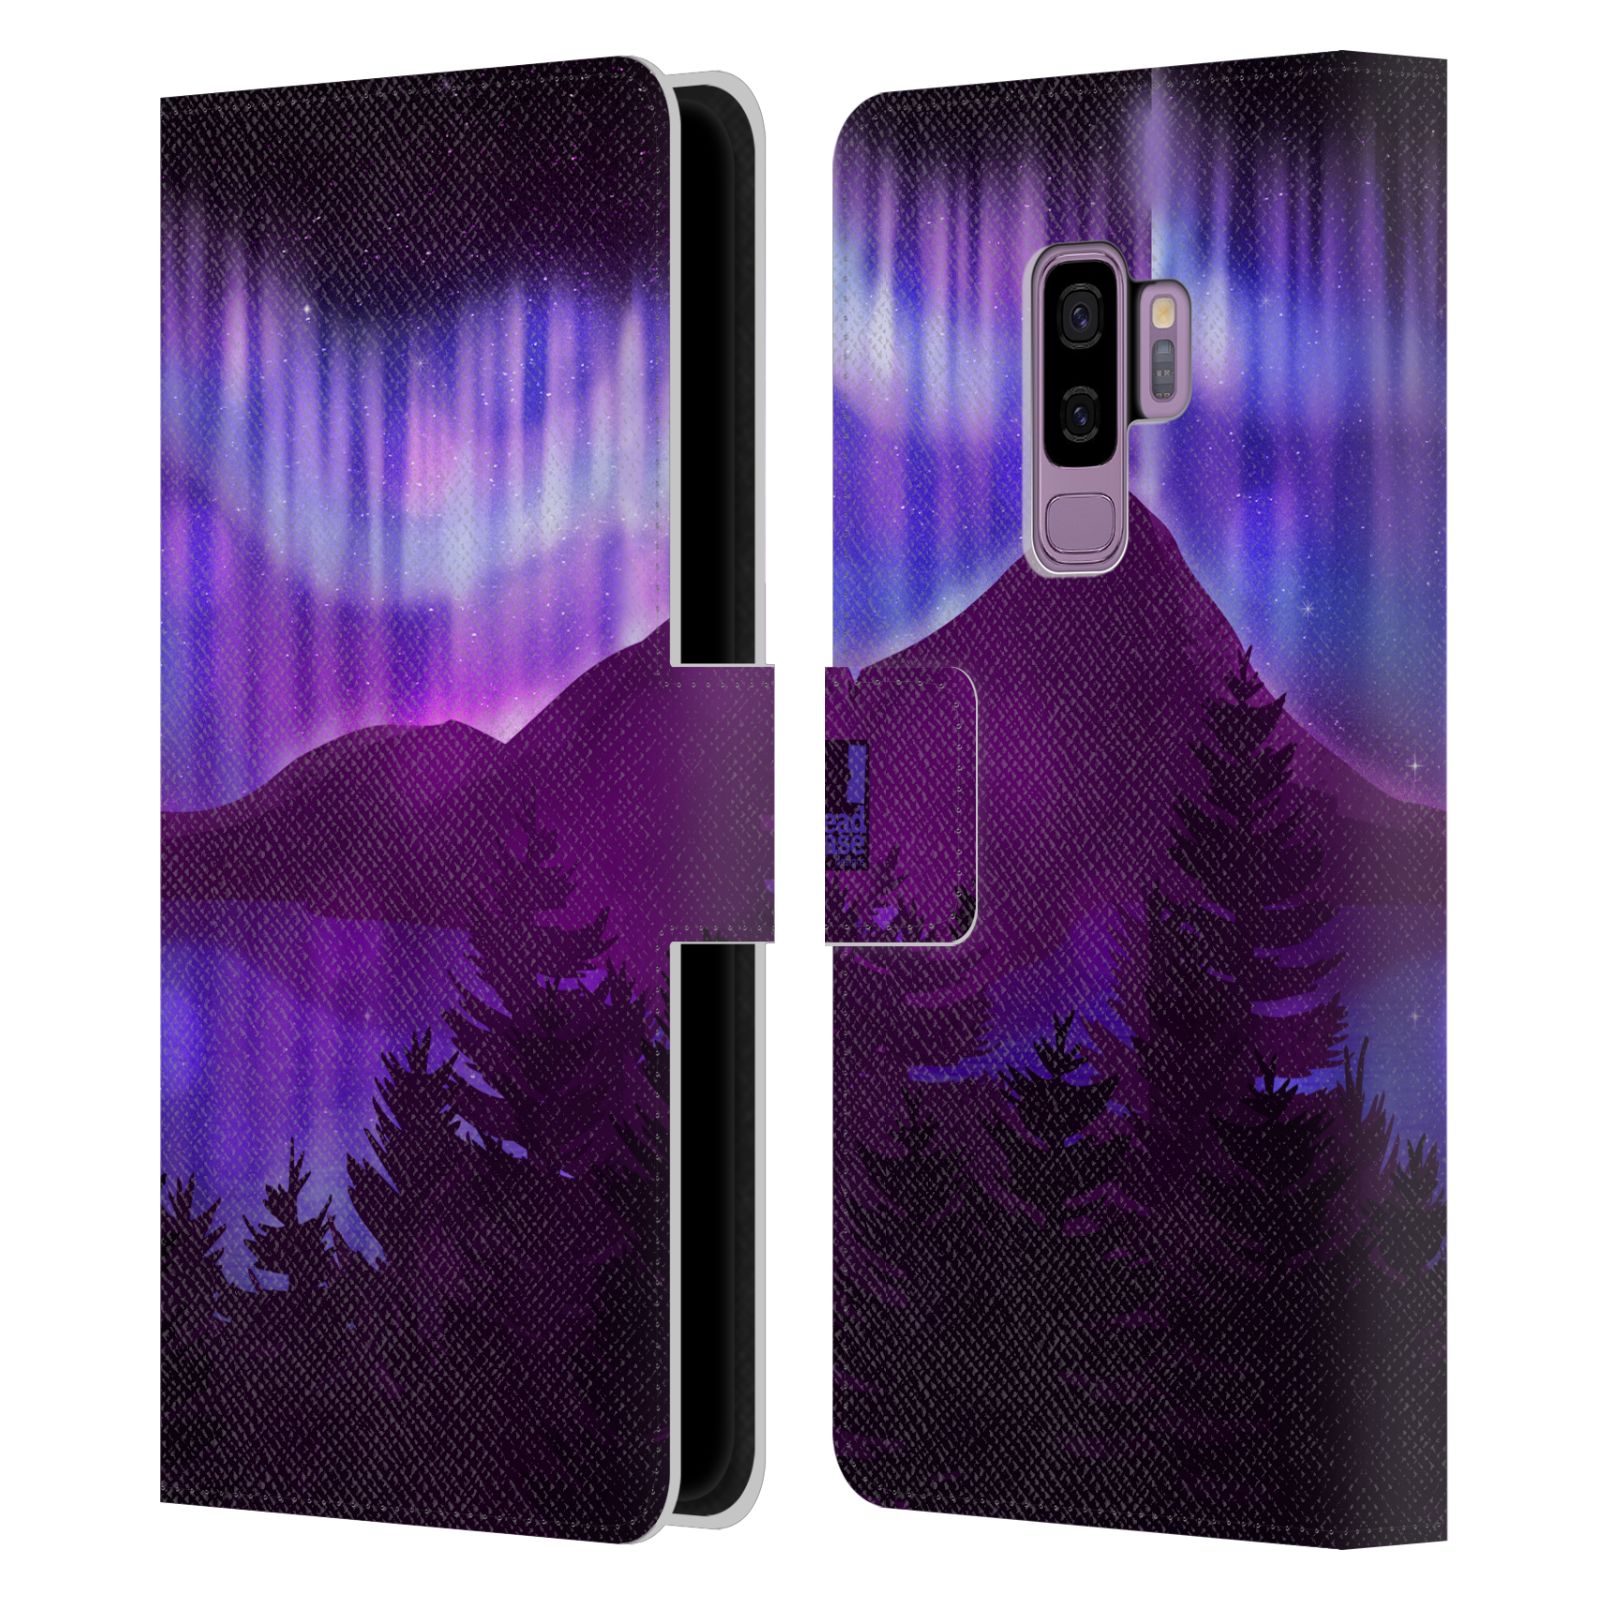 Pouzdro na mobil Samsung Galaxy S9+ / S9 PLUS - HEAD CASE - Hory a lesy fialový odstín